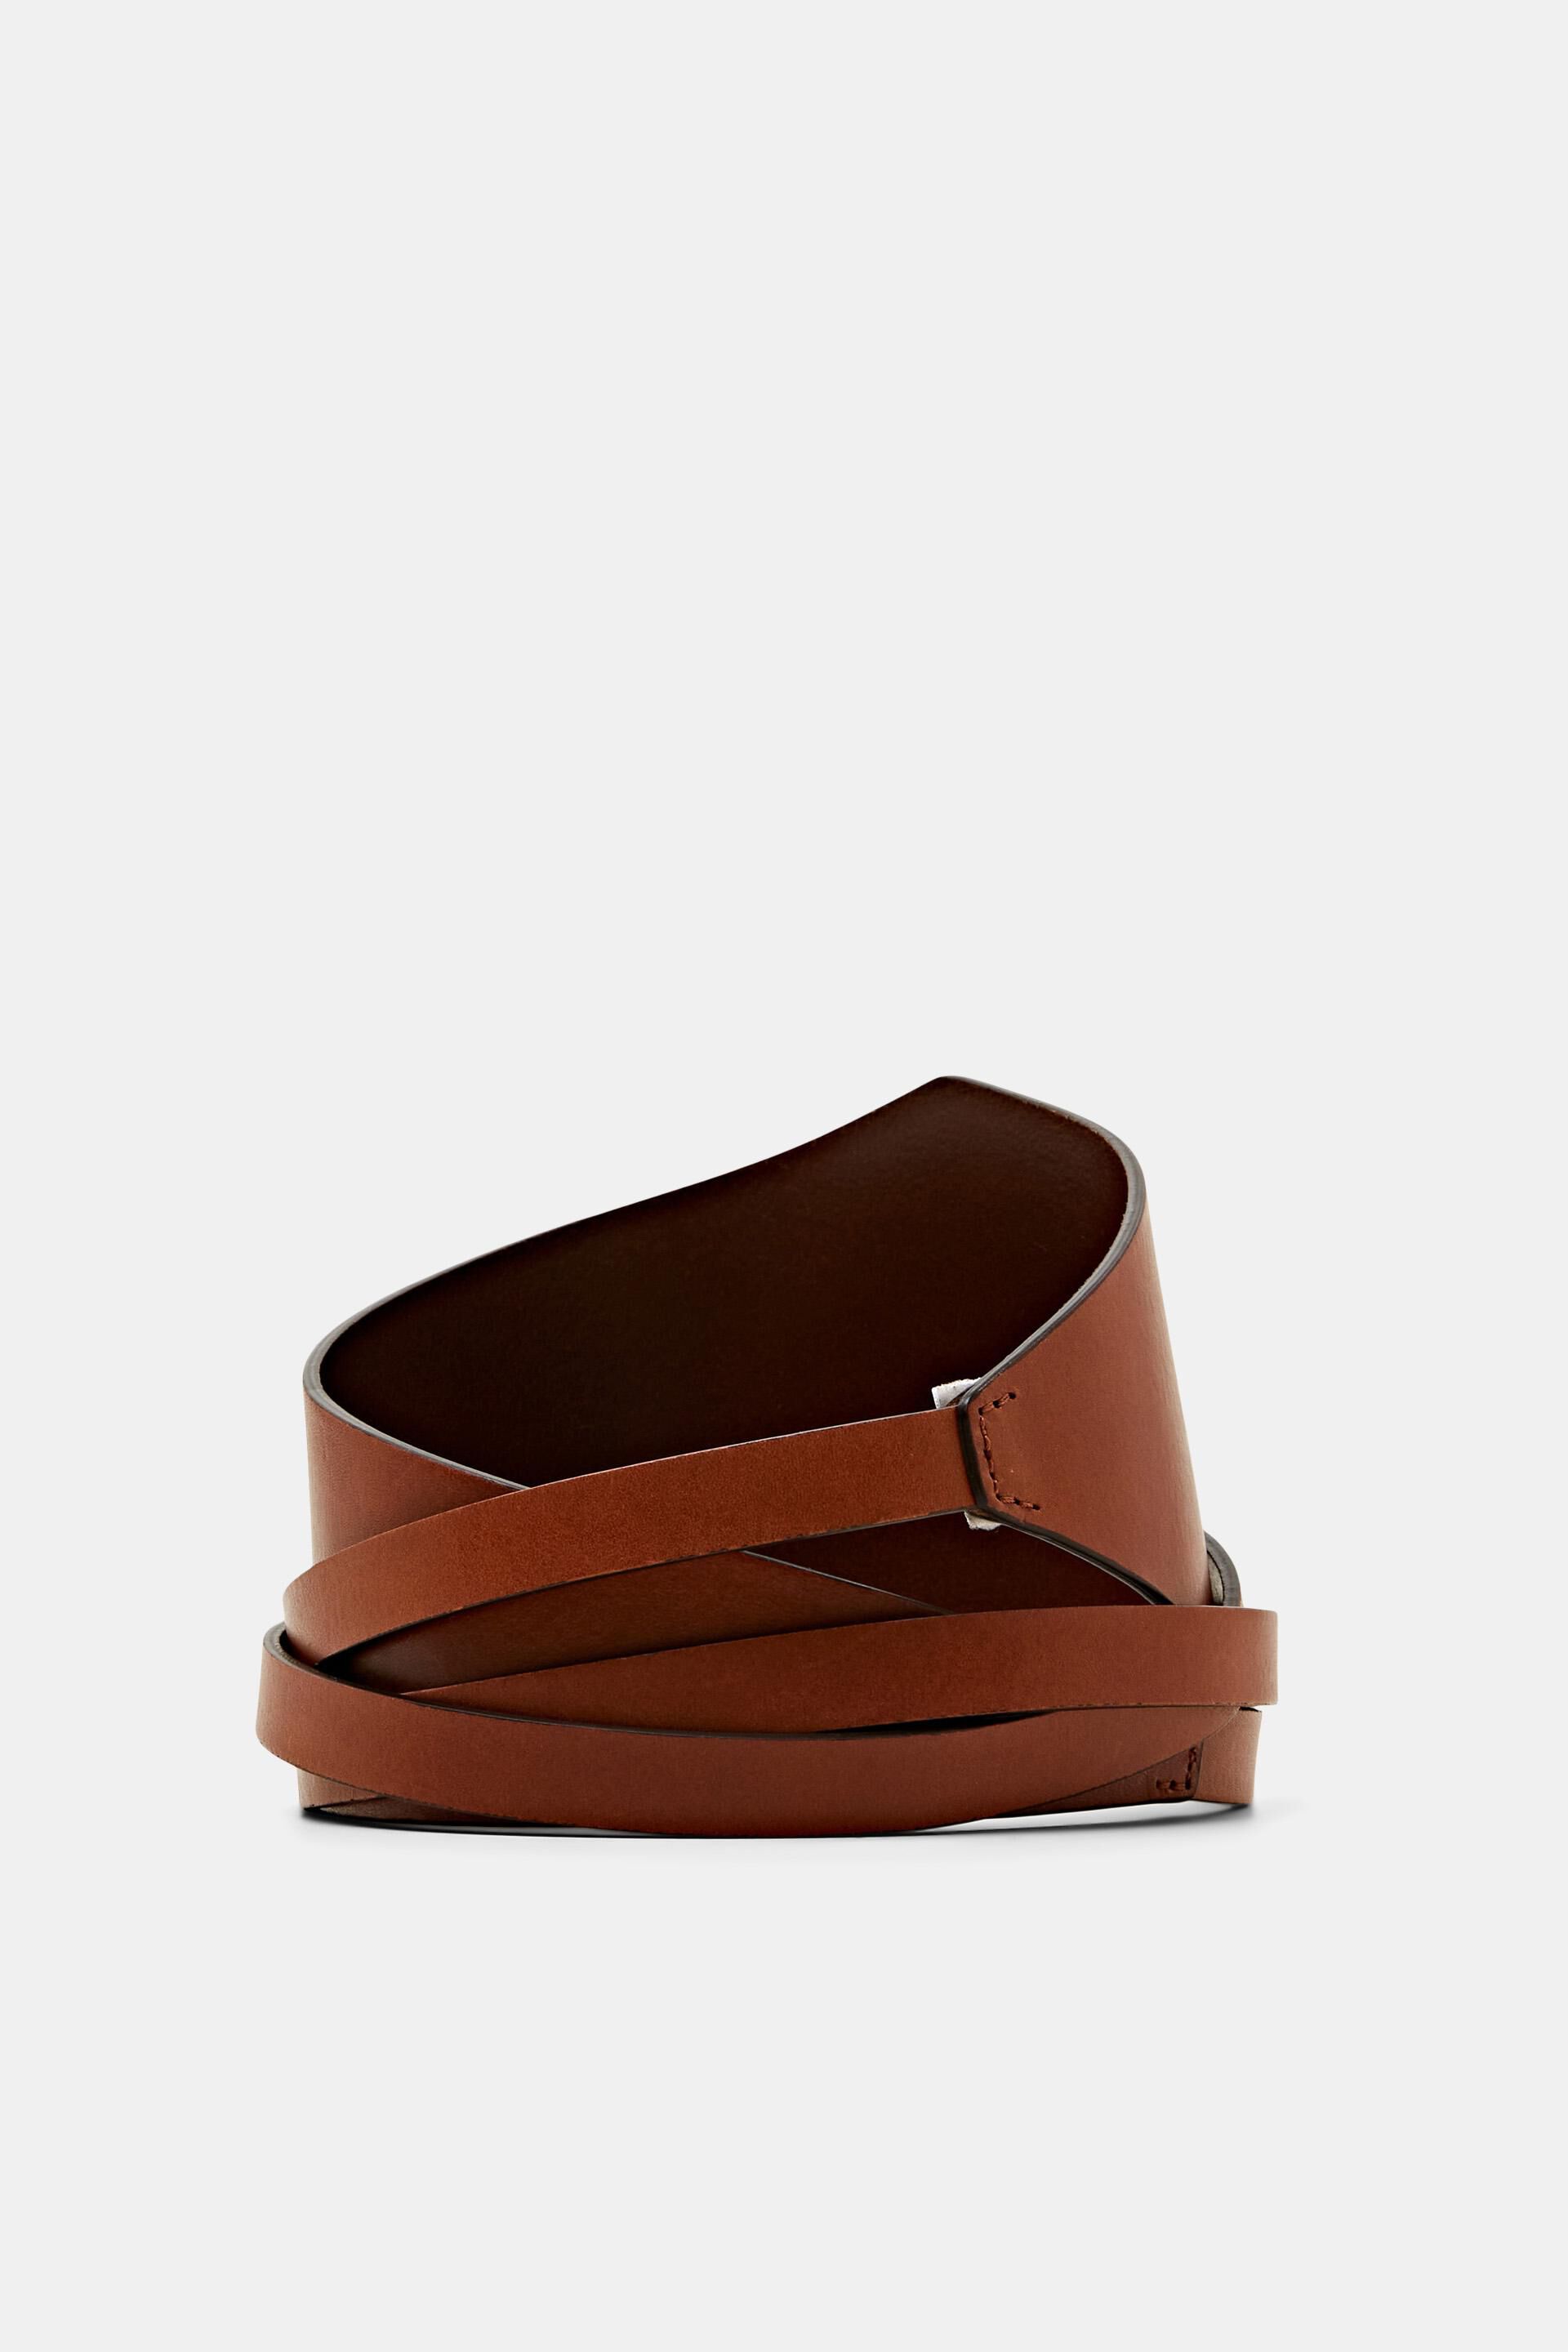 Esprit Online Store Leather Wrap Belt